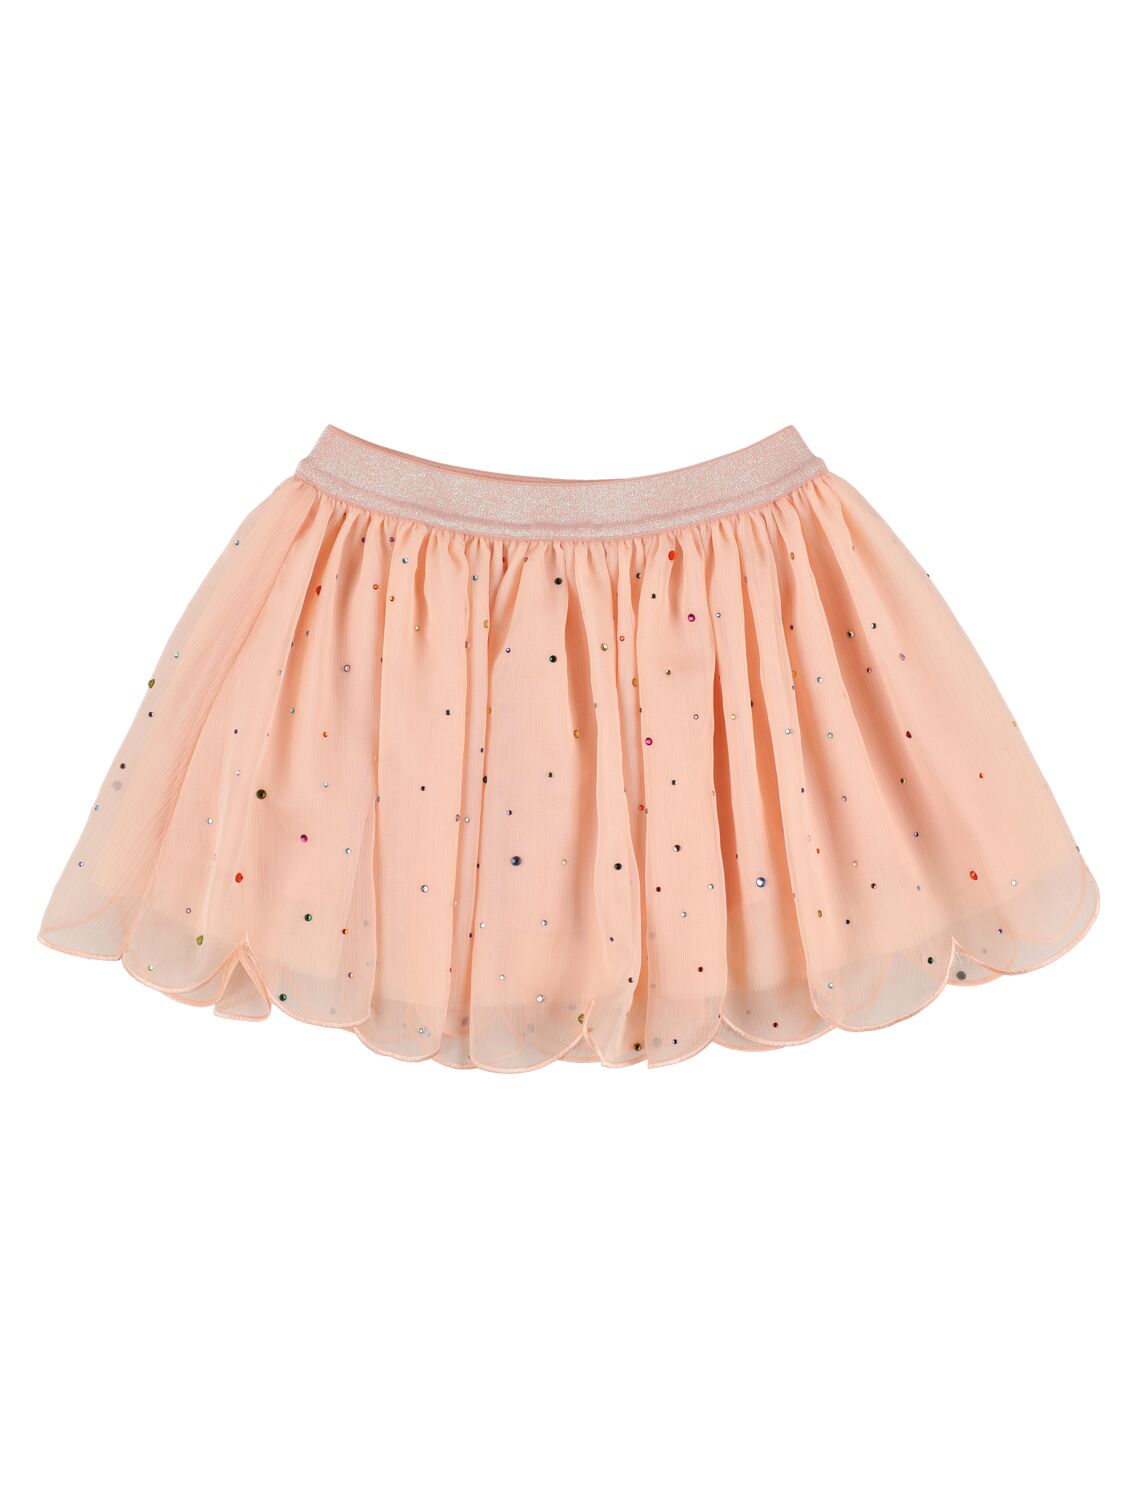 Image of Embellished Chiffon & Tulle Skirt